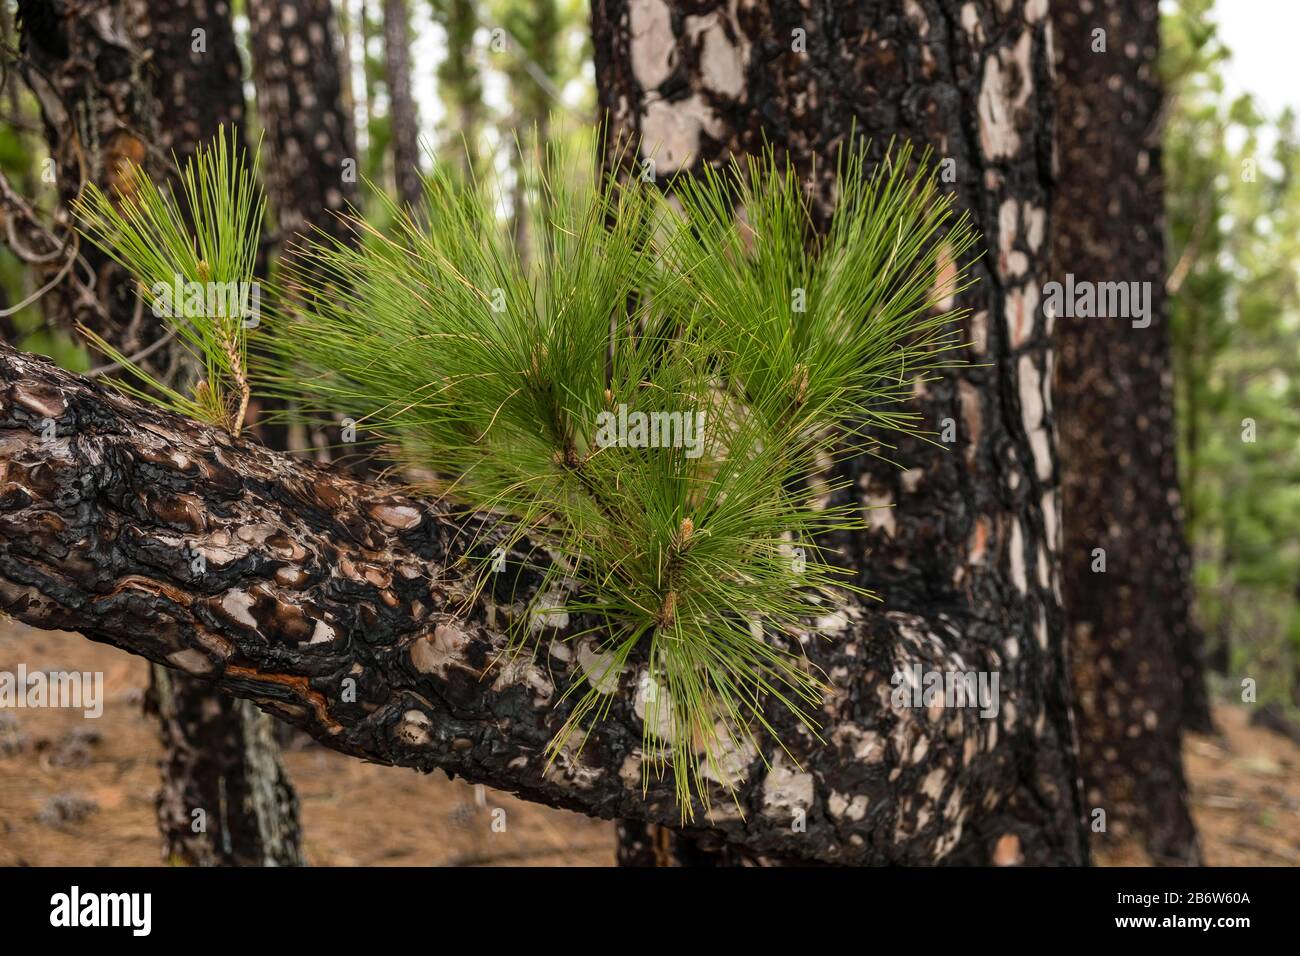 Giovane tiro di un pino dell'isola delle Canarie (Pinus canariensis) dopo il fuoco della foresta, la Palma, Isole Canarie, Spagna Foto Stock